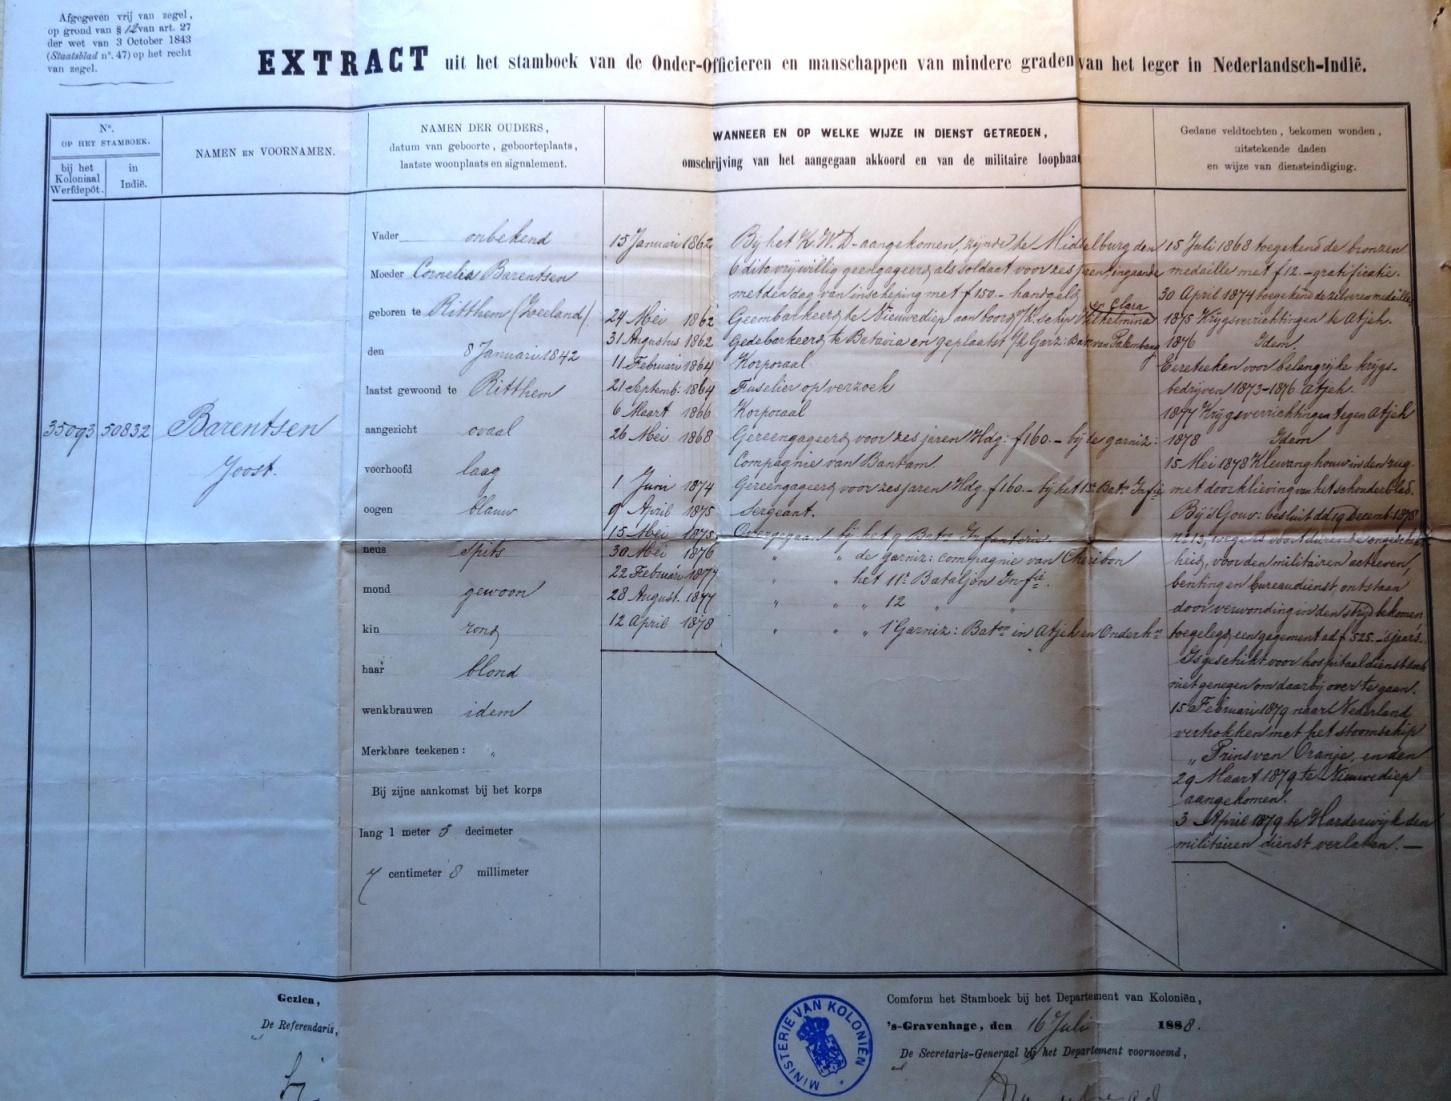 1862-1878 Joost 20-36 jaar Dank zij een Extract uit het stamboek van de Onder-Officieren en manschappen van mindere graden van